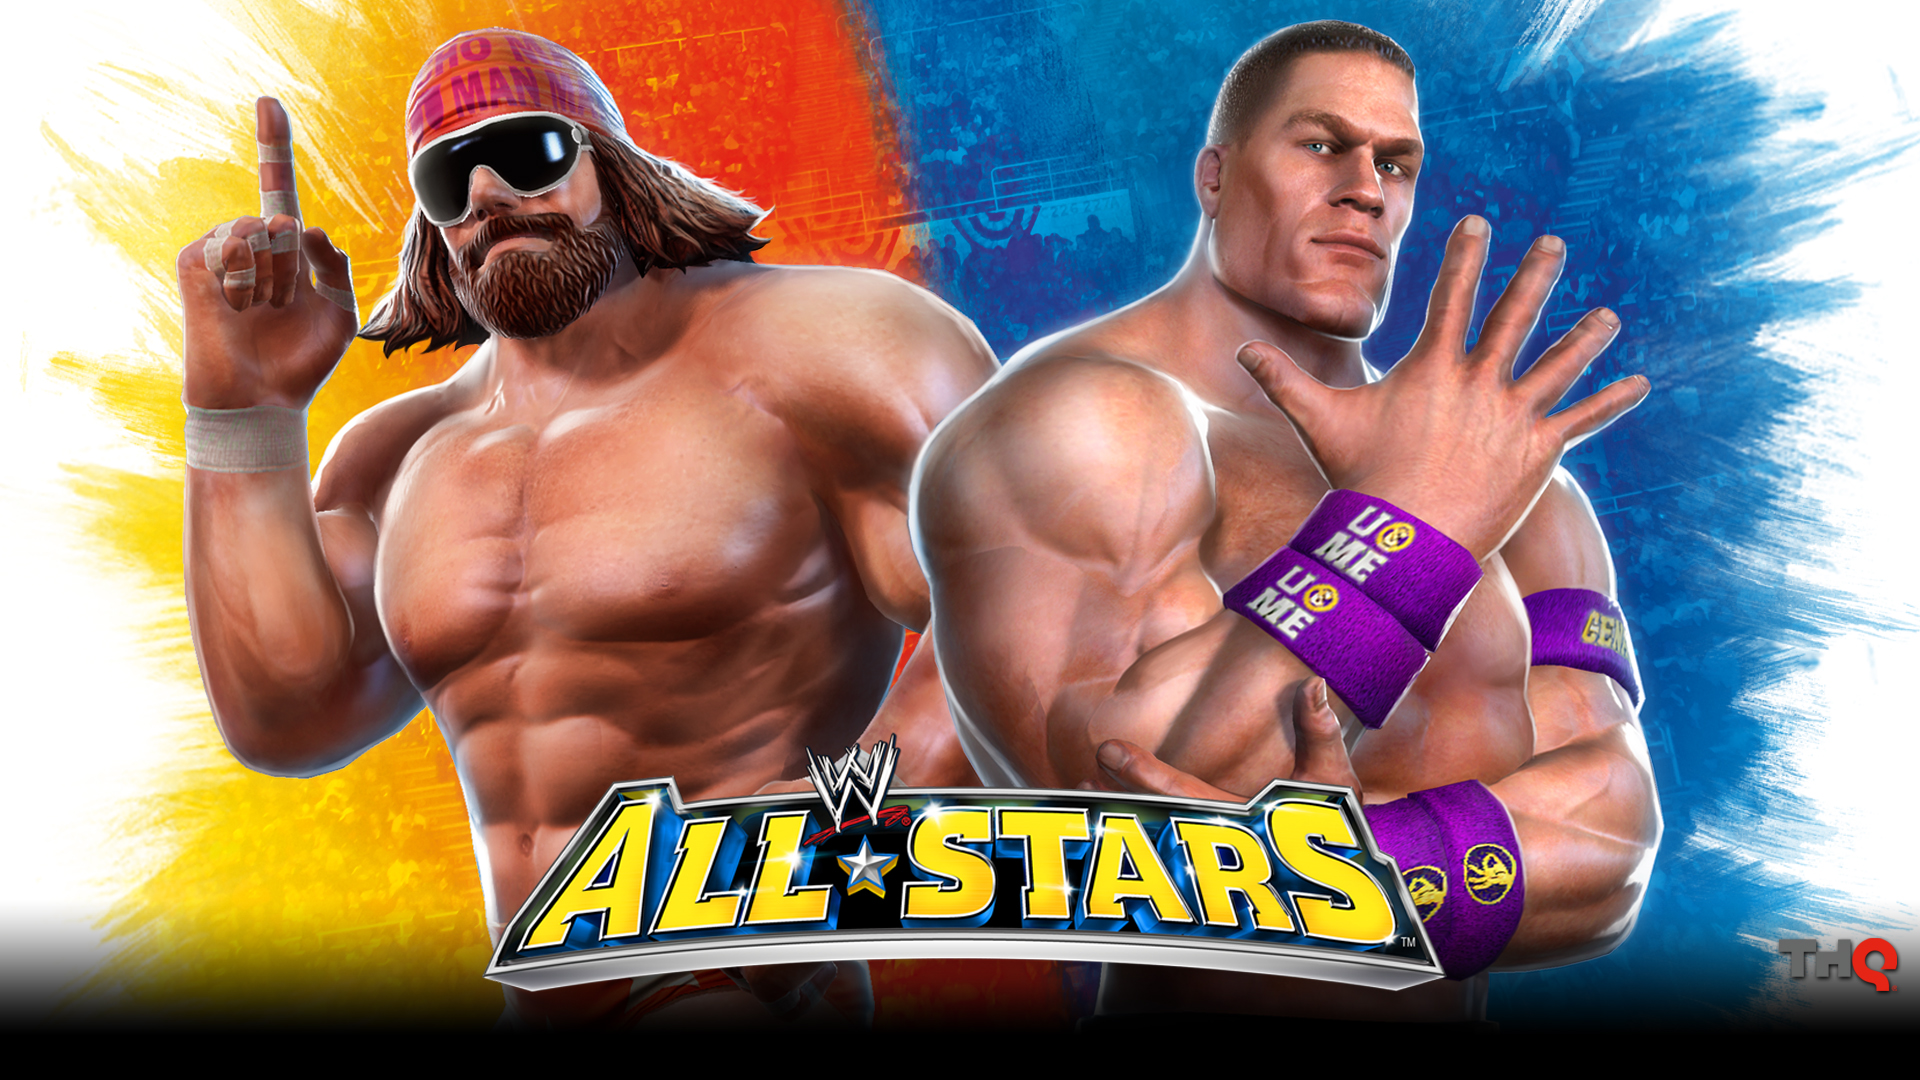 WWE All Stars HD Wallpaper